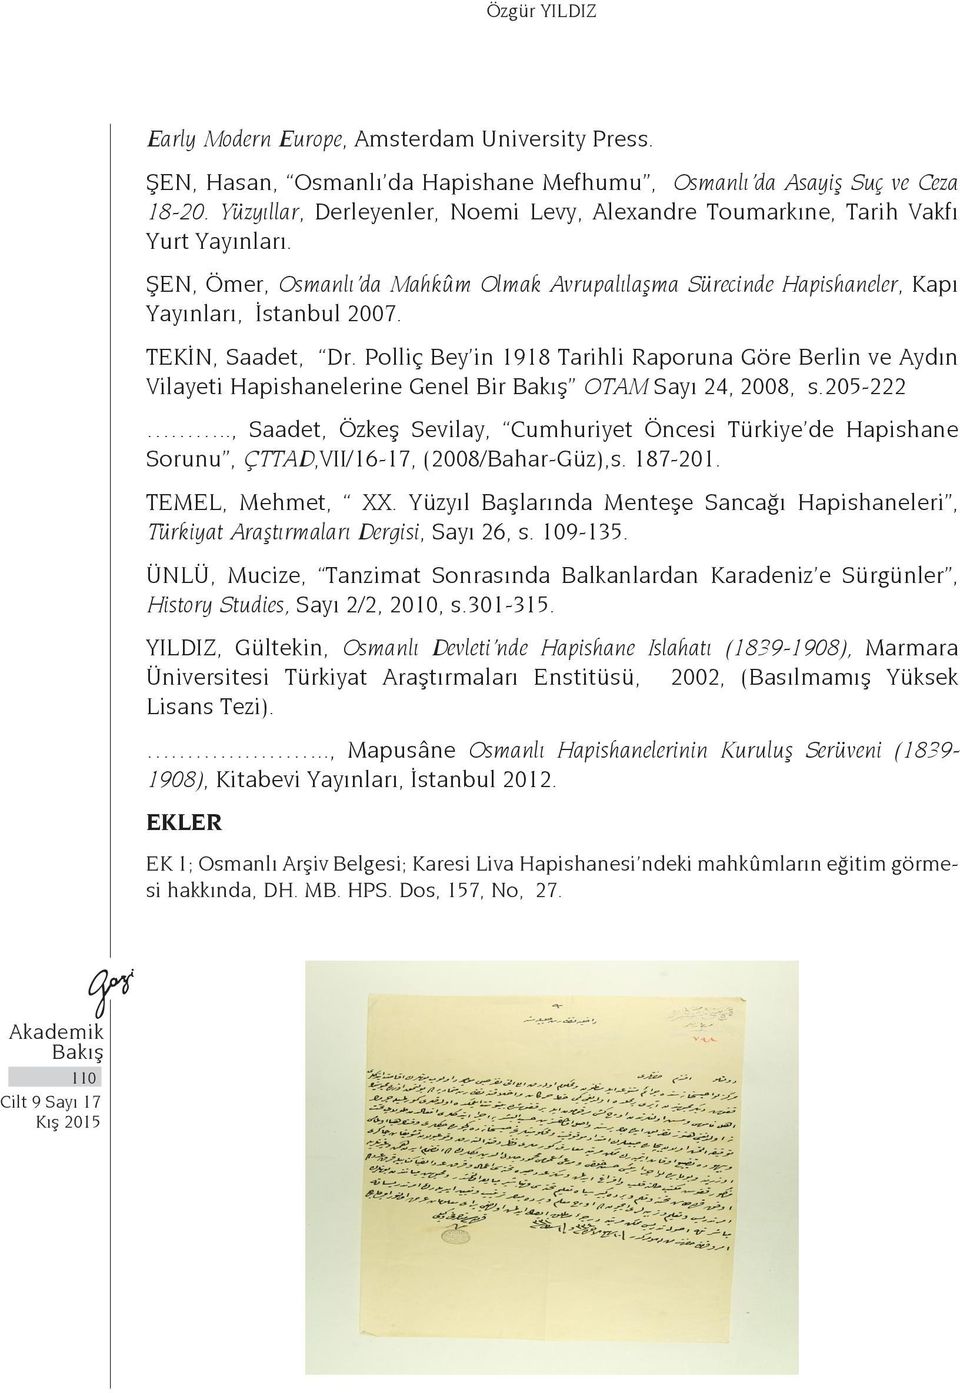 TEKİN, Saadet, Dr. Polliç Bey in 1918 Tarihli Raporuna Göre Berlin ve Aydın Vilayeti Hapishanelerine Genel Bir OTAM Sayı 24, 2008, s.205-222.